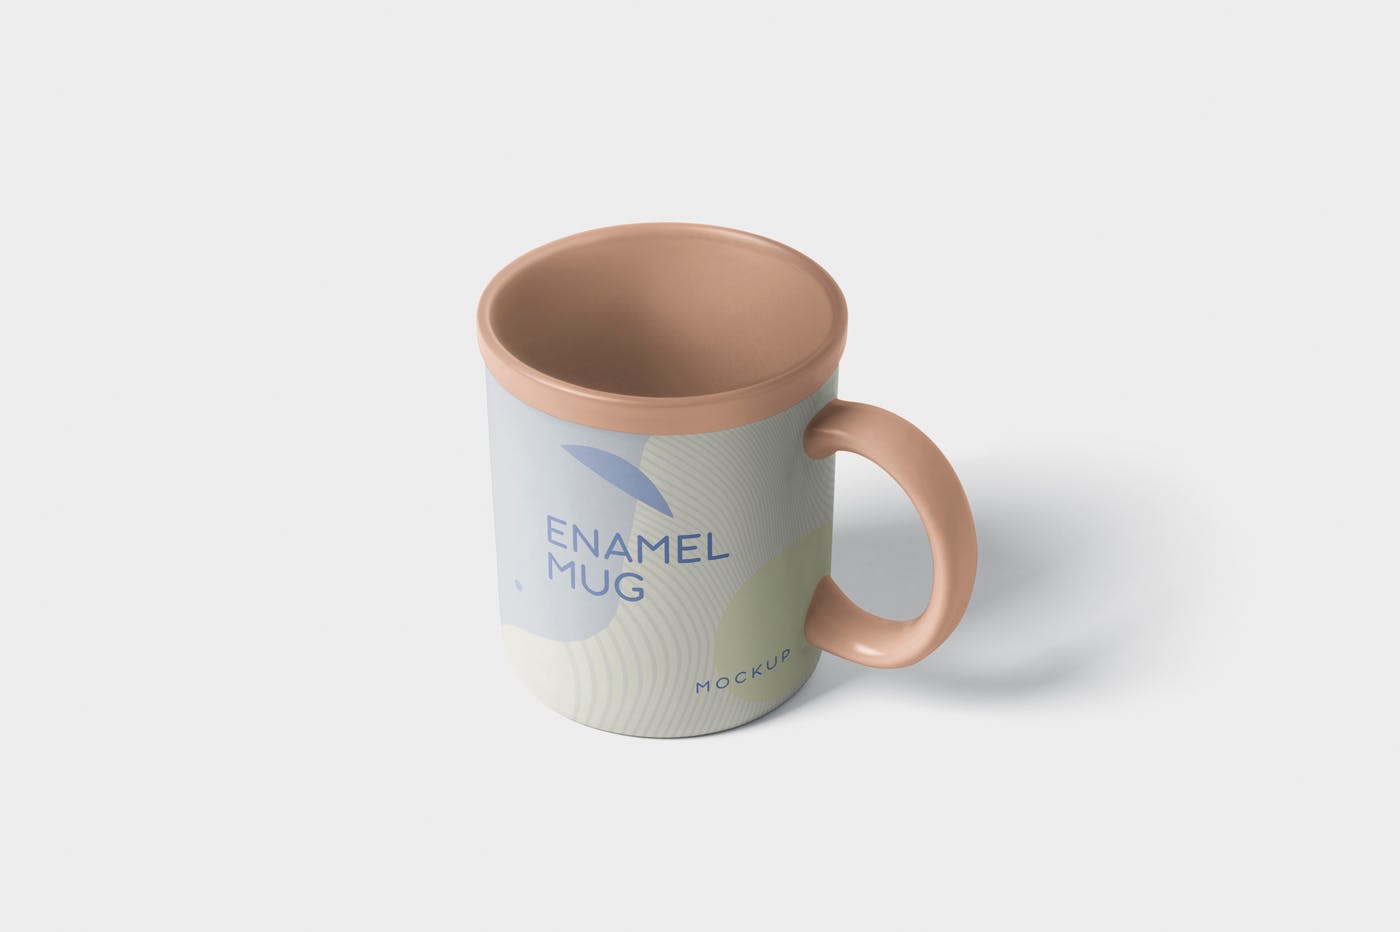 带把手圆形搪瓷杯马克杯图案设计素材库精选 Round Enamel Mug Mockup With Handle插图(2)